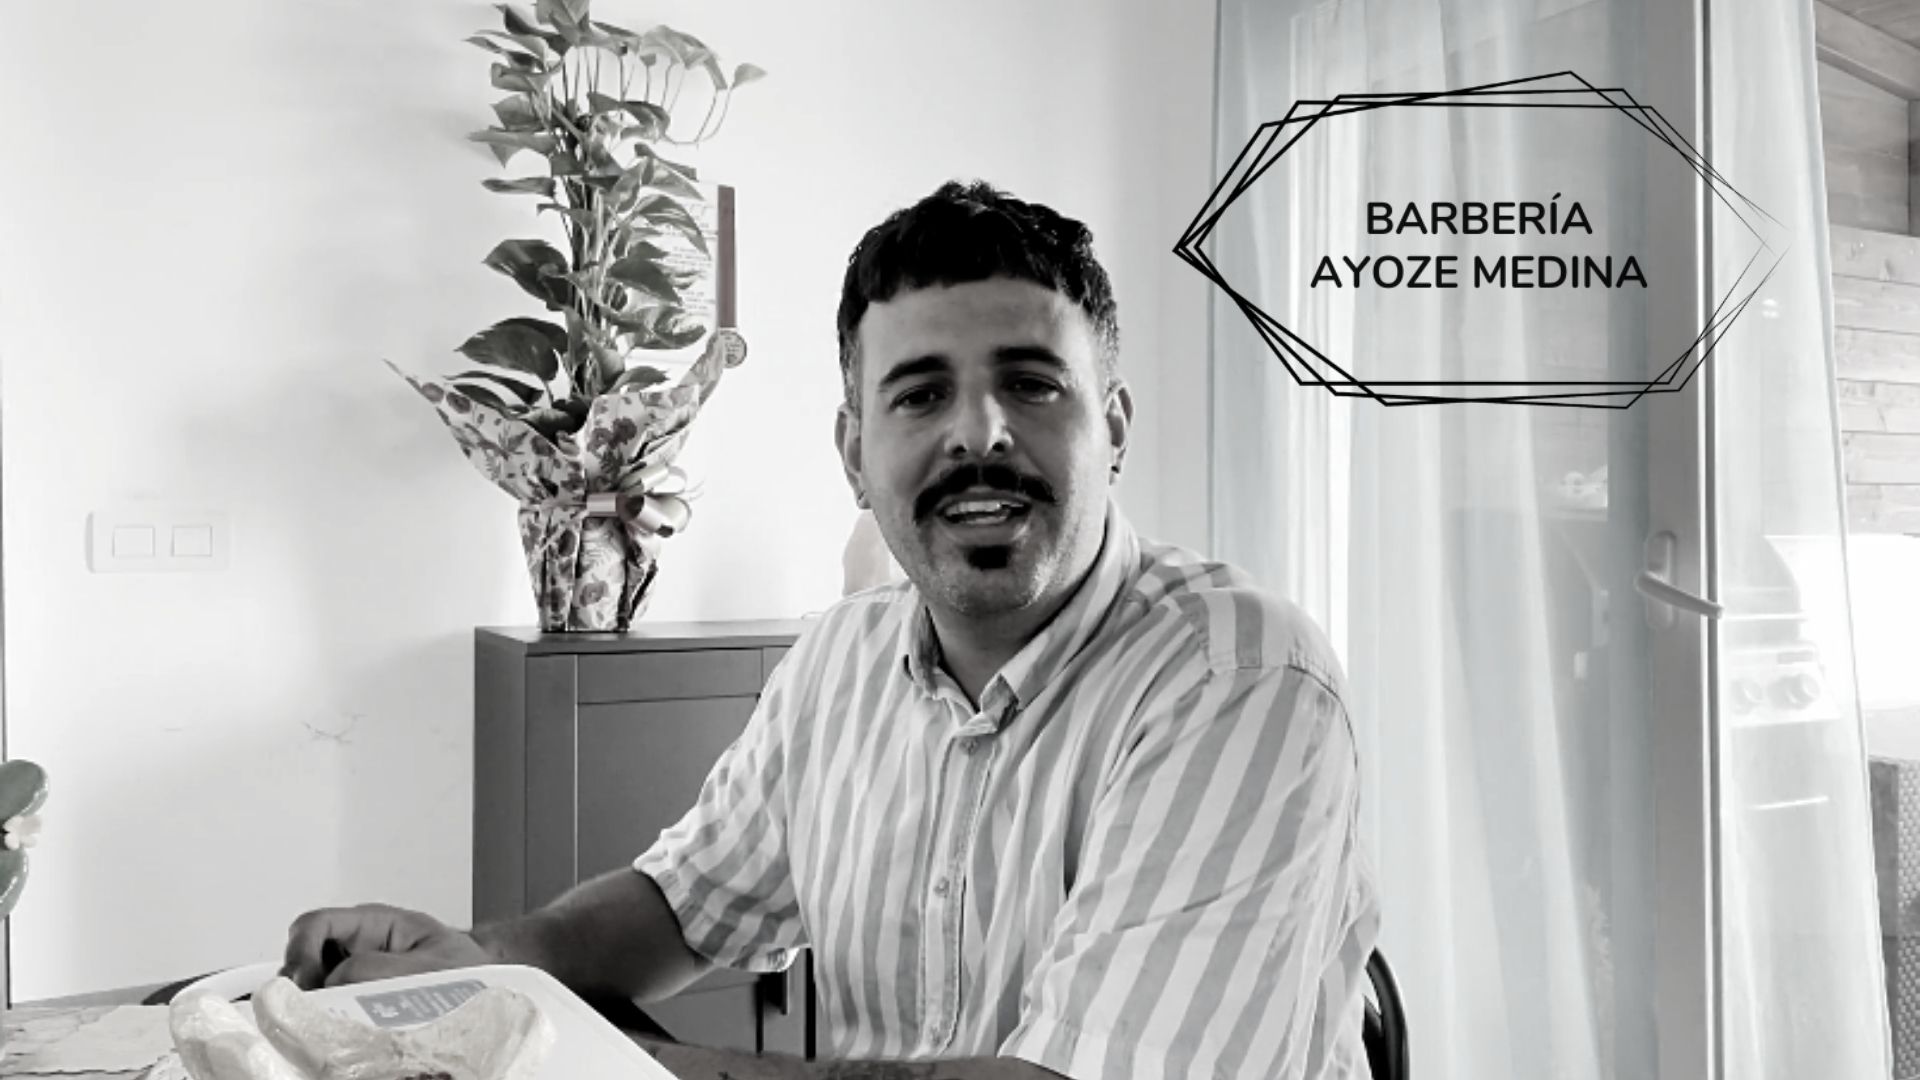 Barbería Ayoze Medina